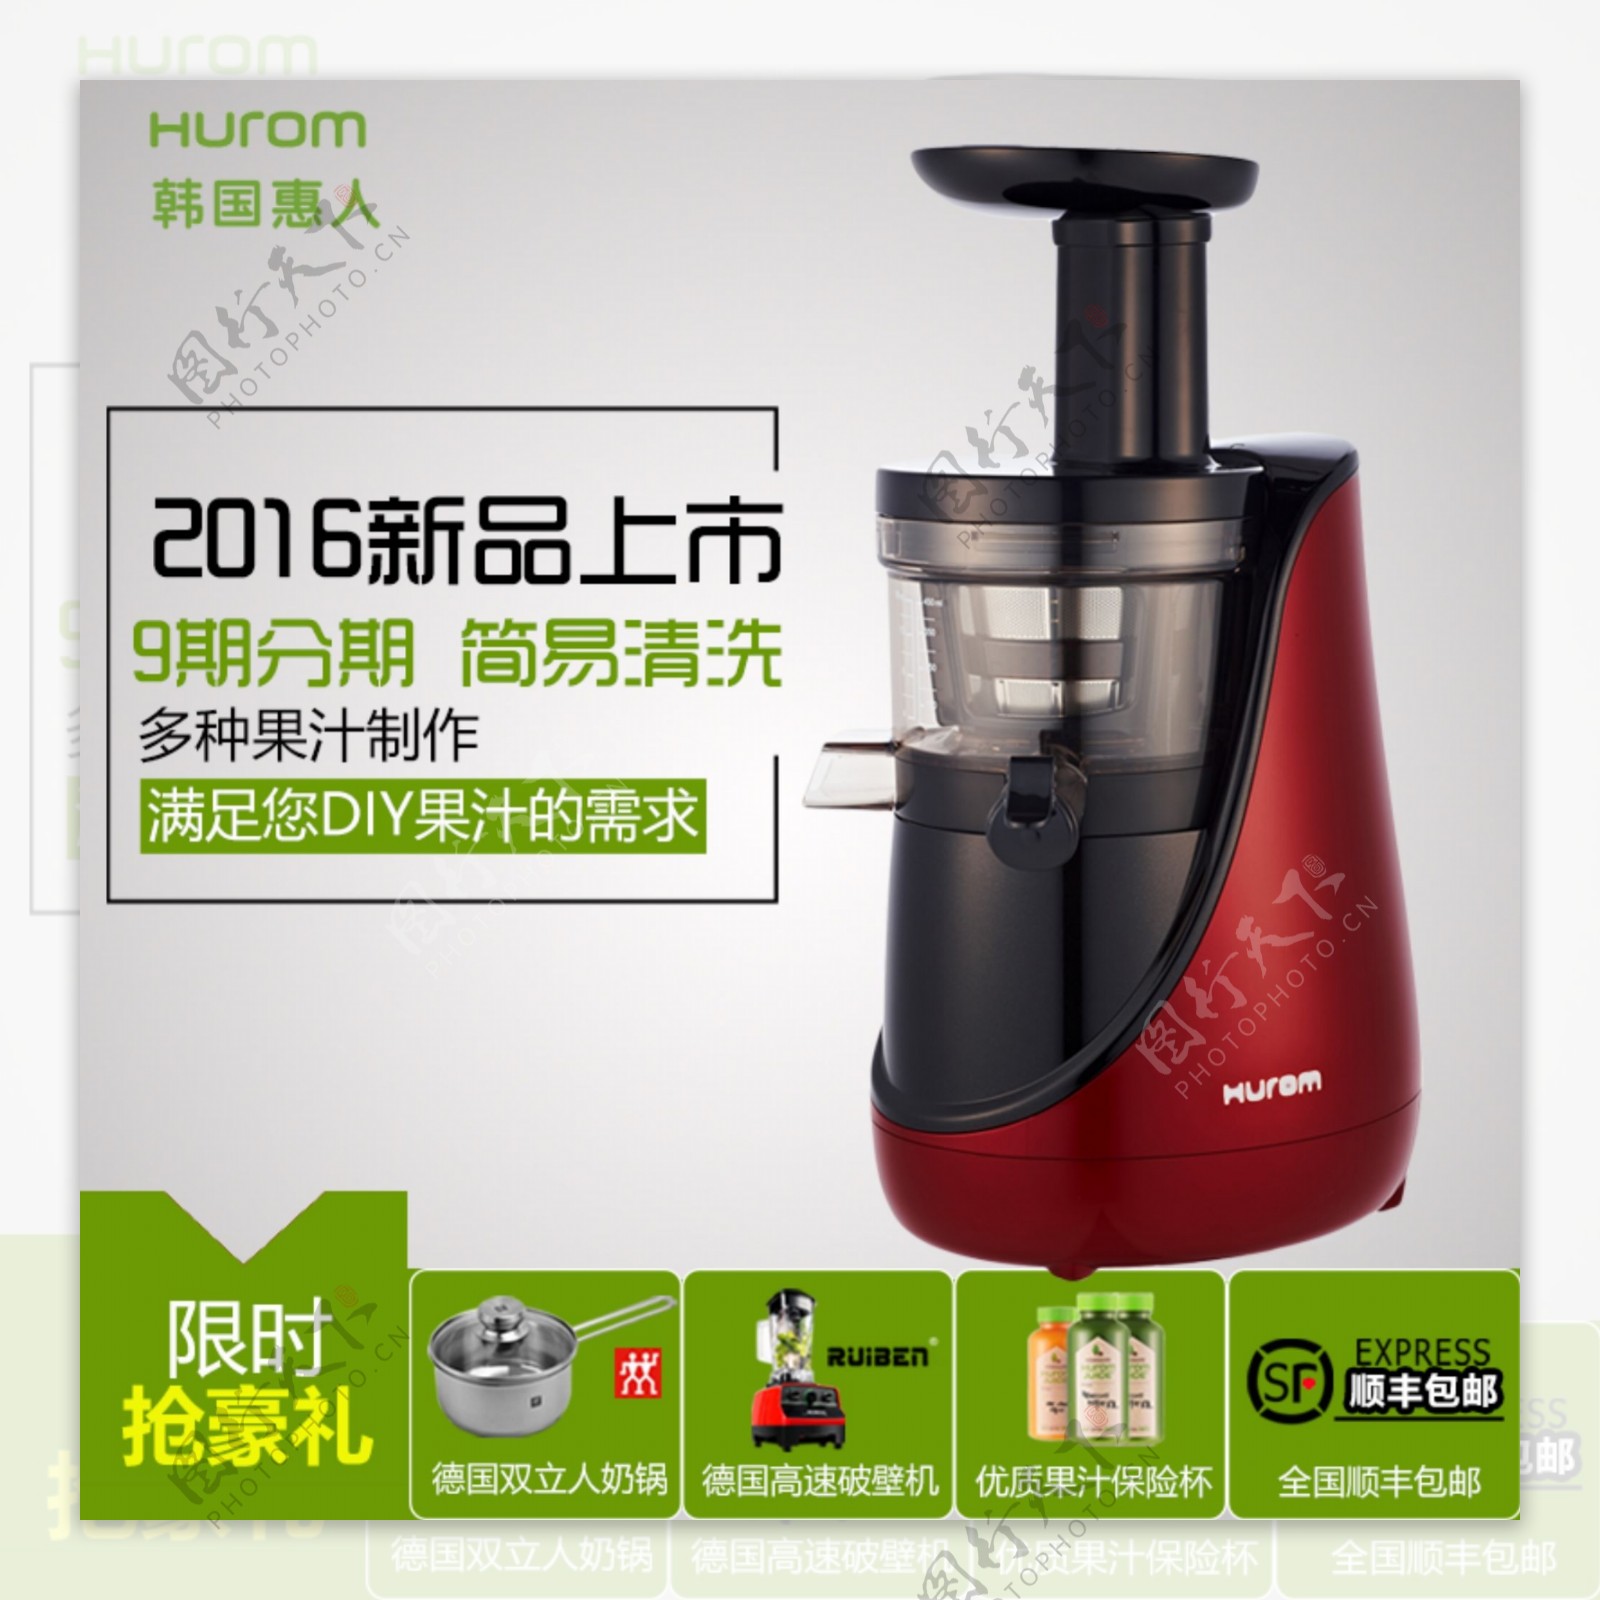 新品上市产品主图惠人原汁机榨汁机